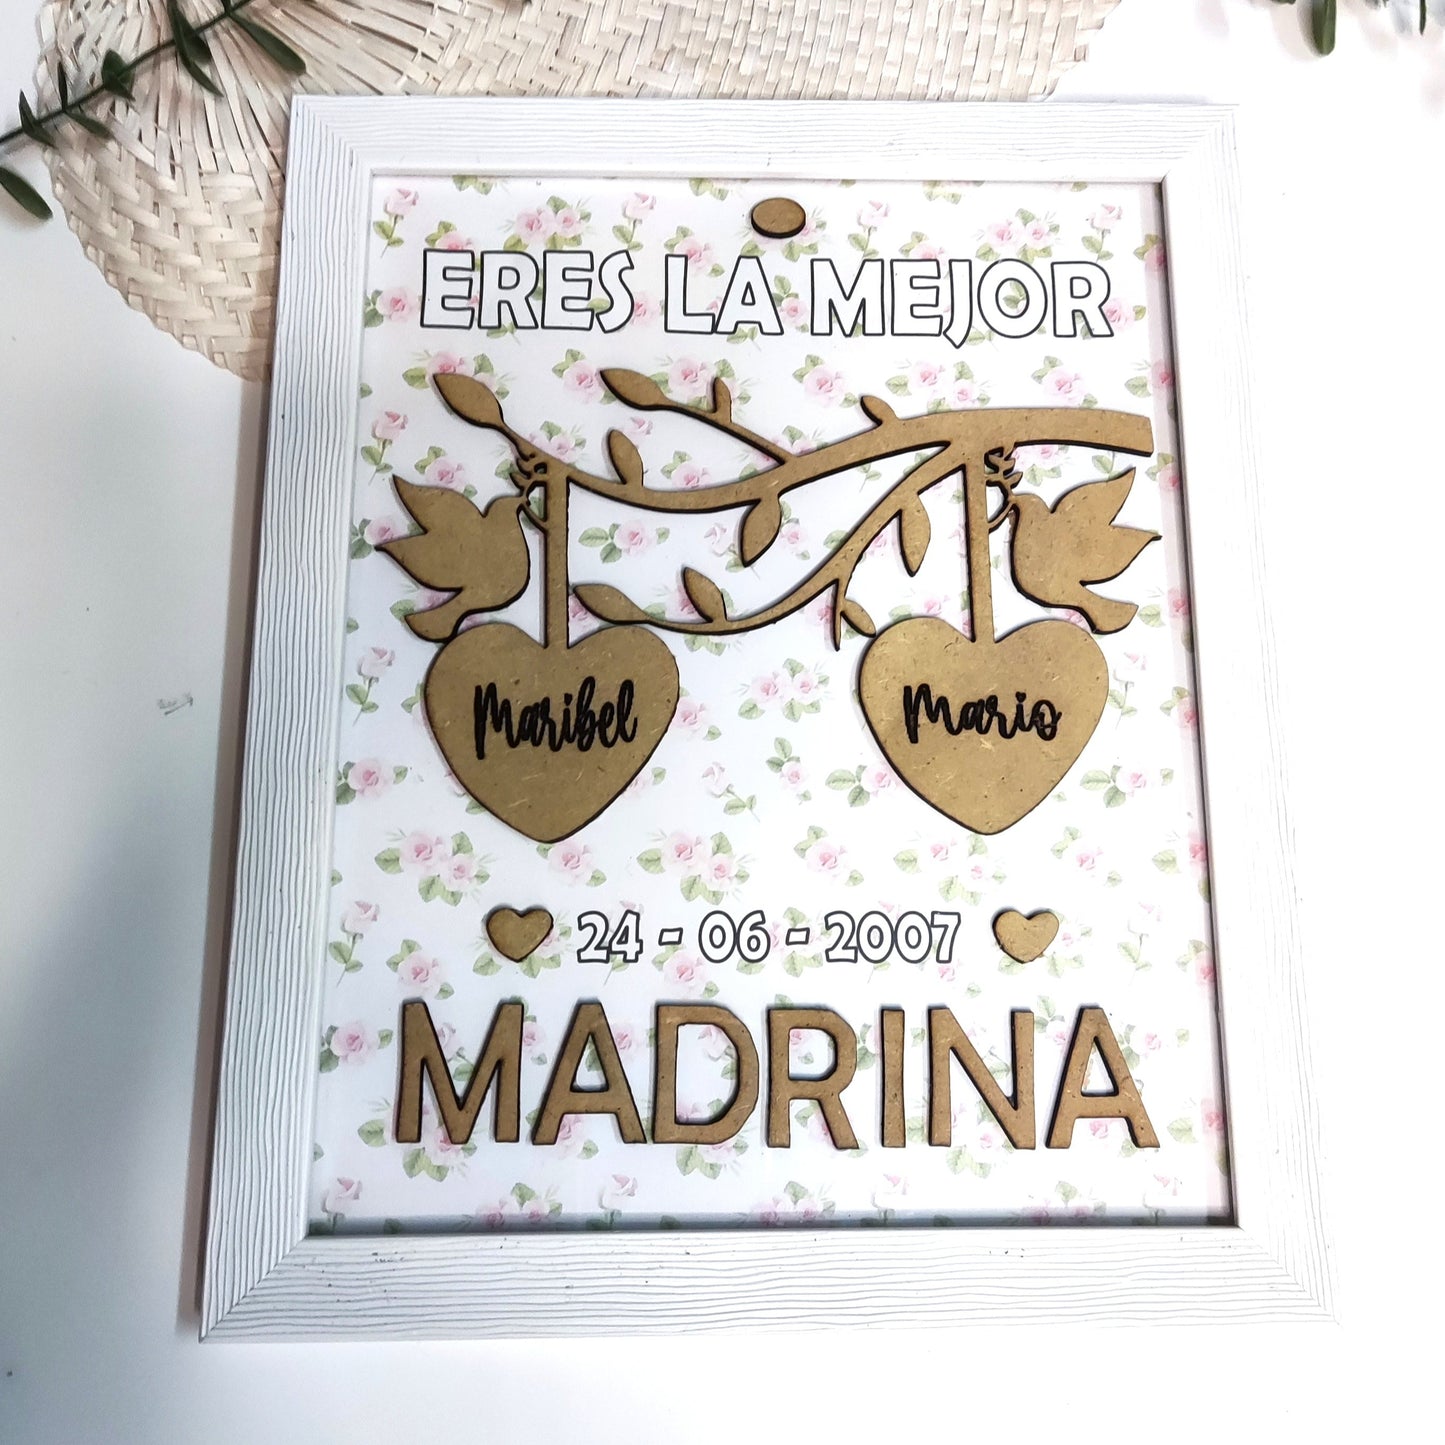 Marco y Lámina personalizable para madrinas, hermanas, madre, abuelas